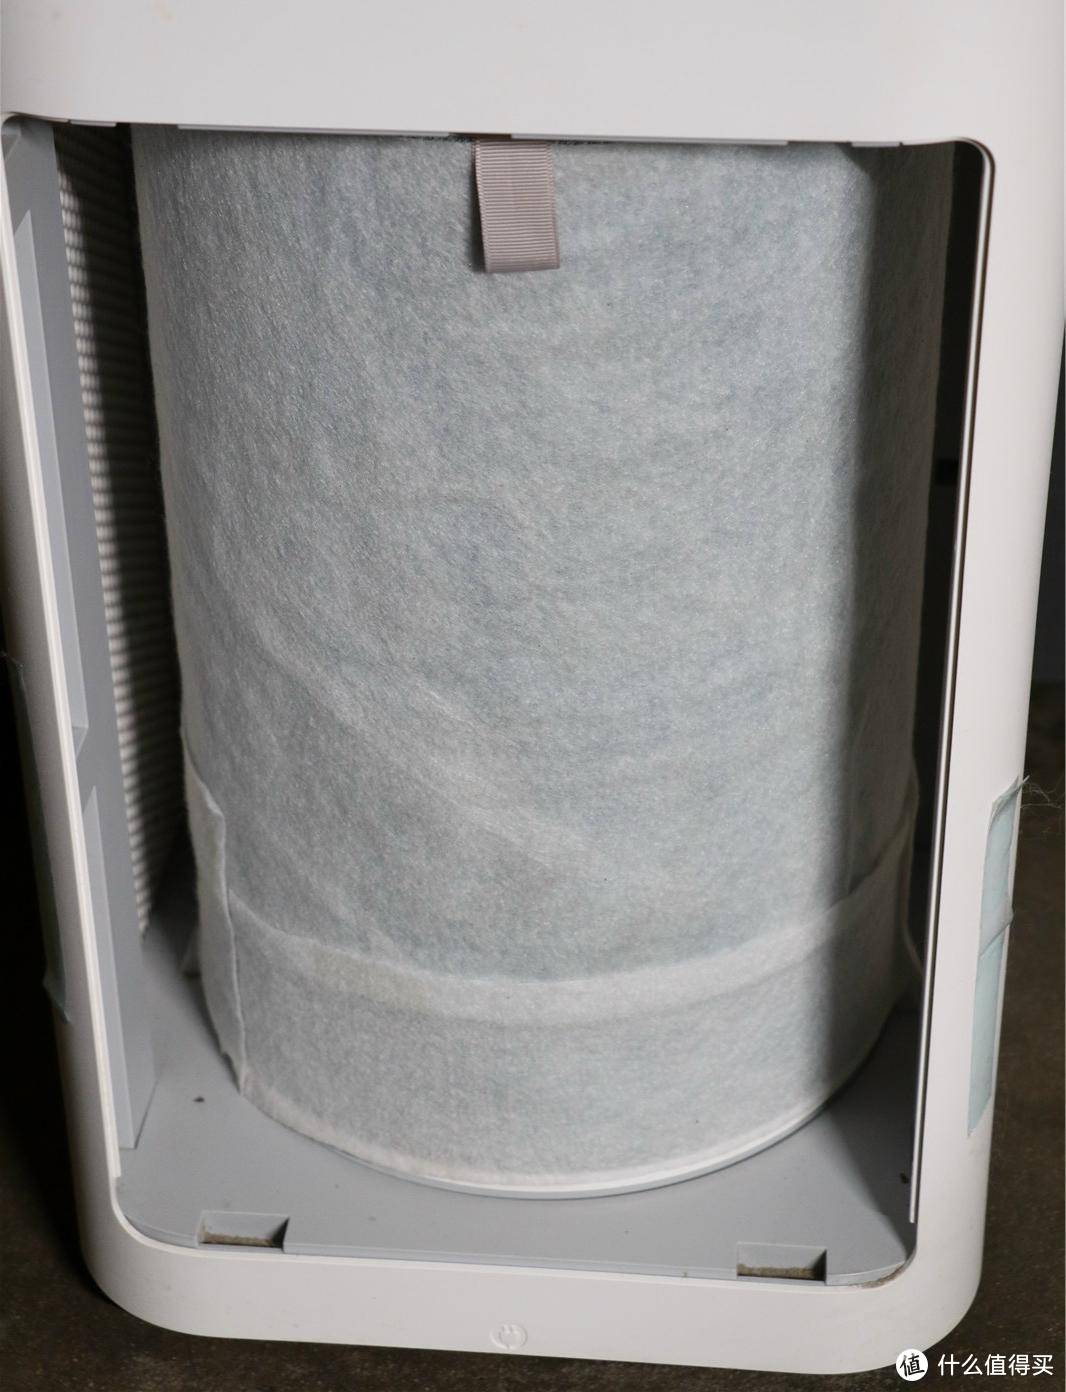 延长滤芯寿命 改善净化效果-为空气净化器更换静电棉